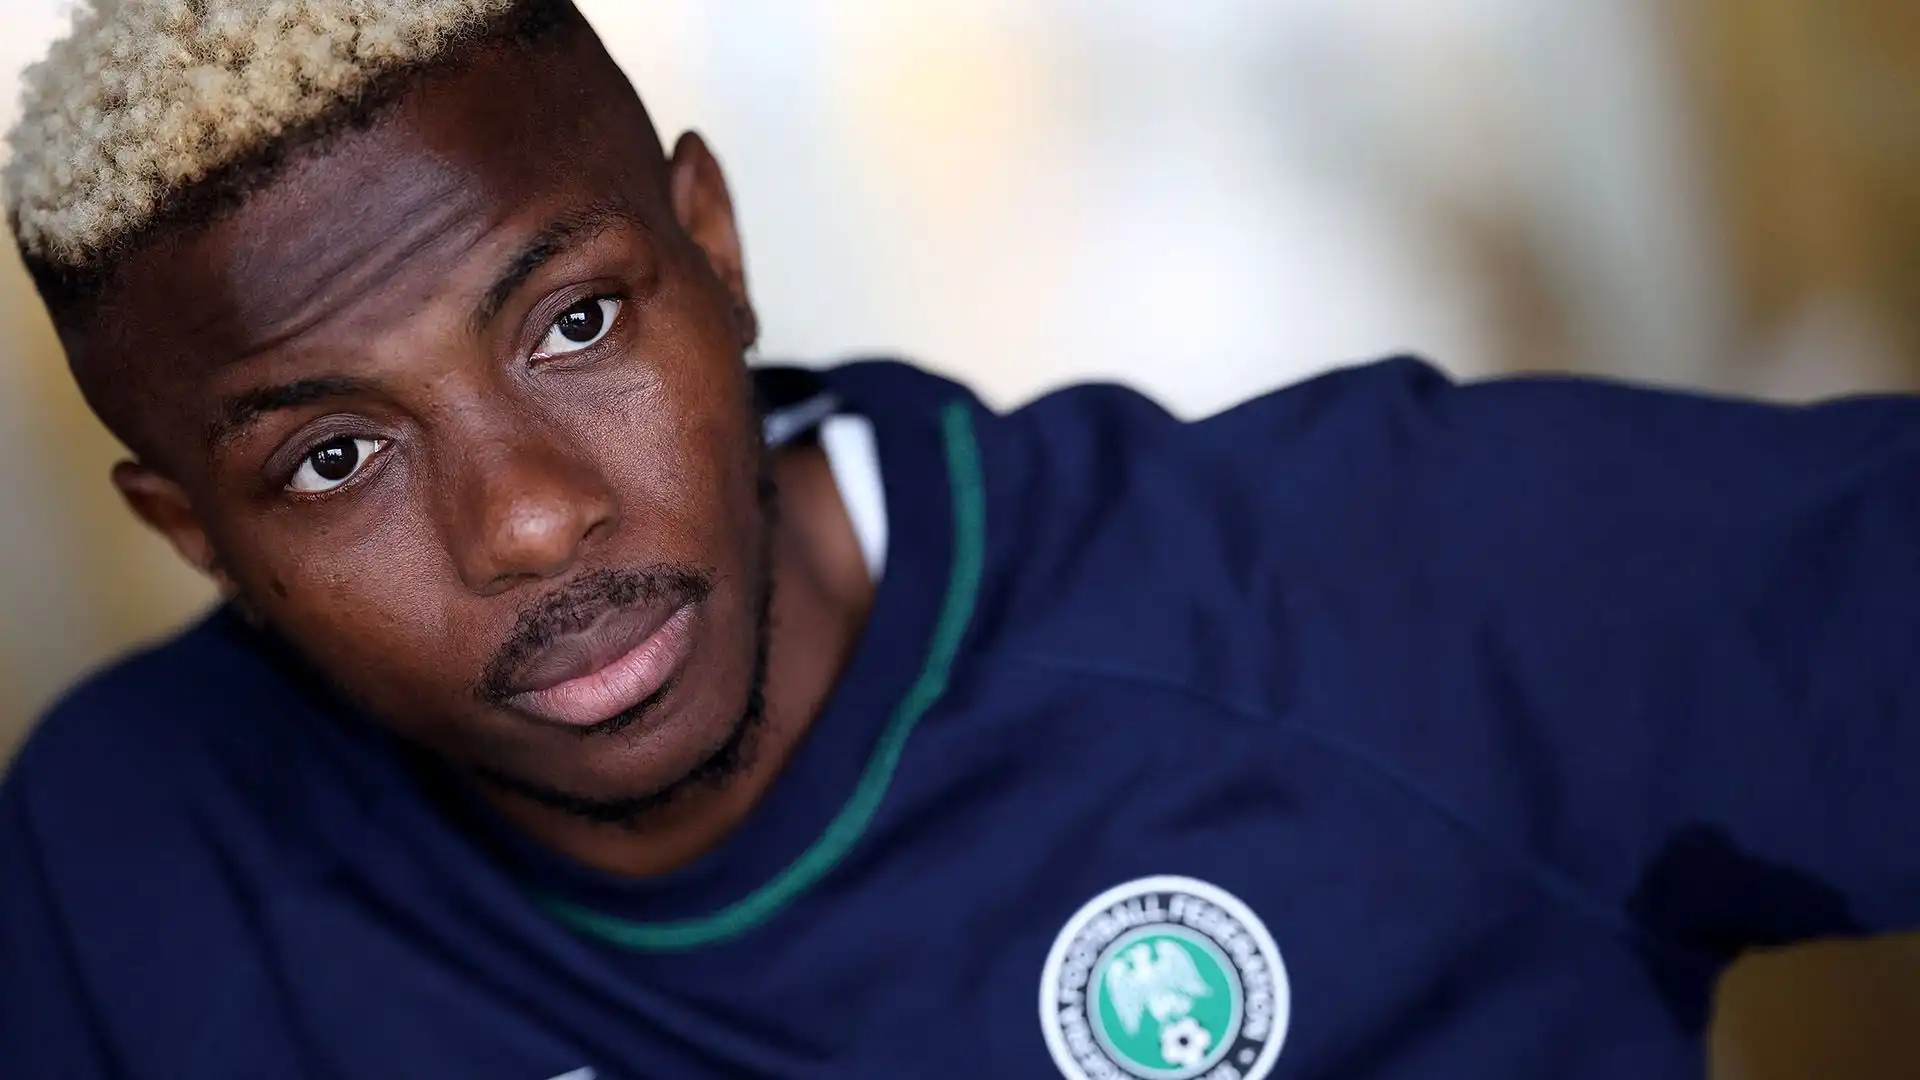 La dirigenza del club ha scelto il nigeriano per sostituire Kylian Mbappé